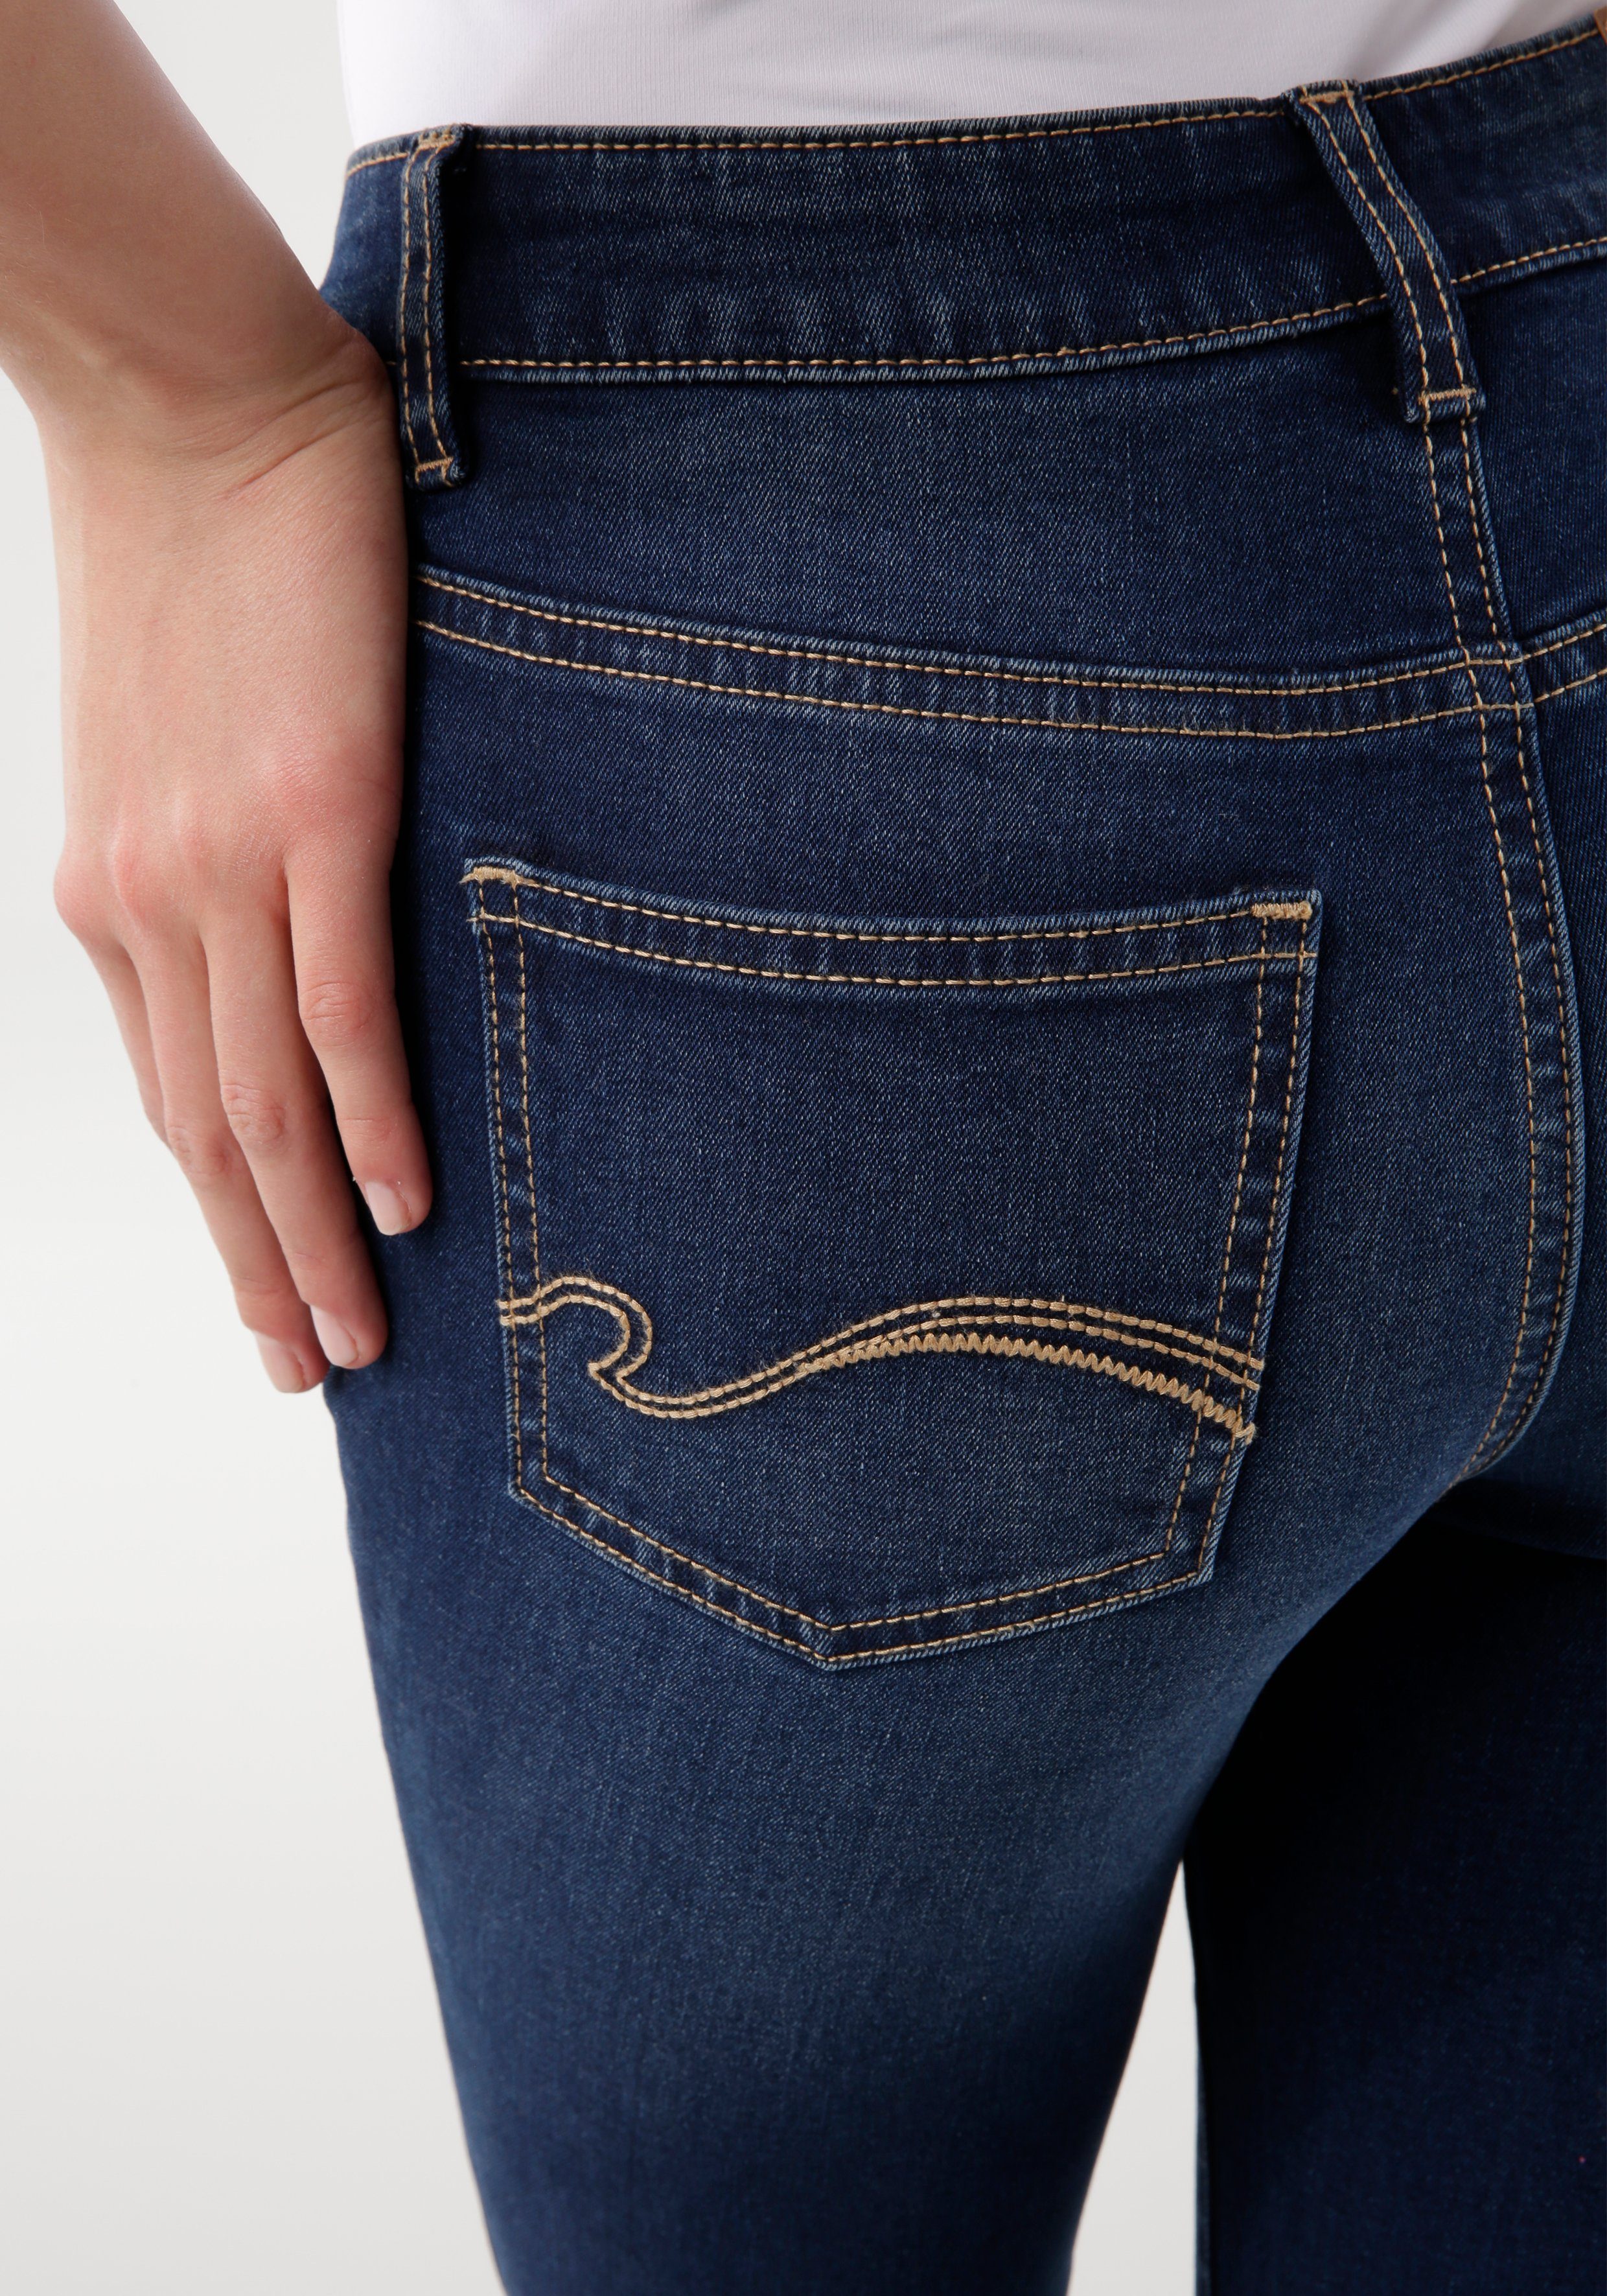 KangaROOS 5-Pocket-Jeans SUPER SKINNY RISE darkblue-used mit used-Effekt HIGH